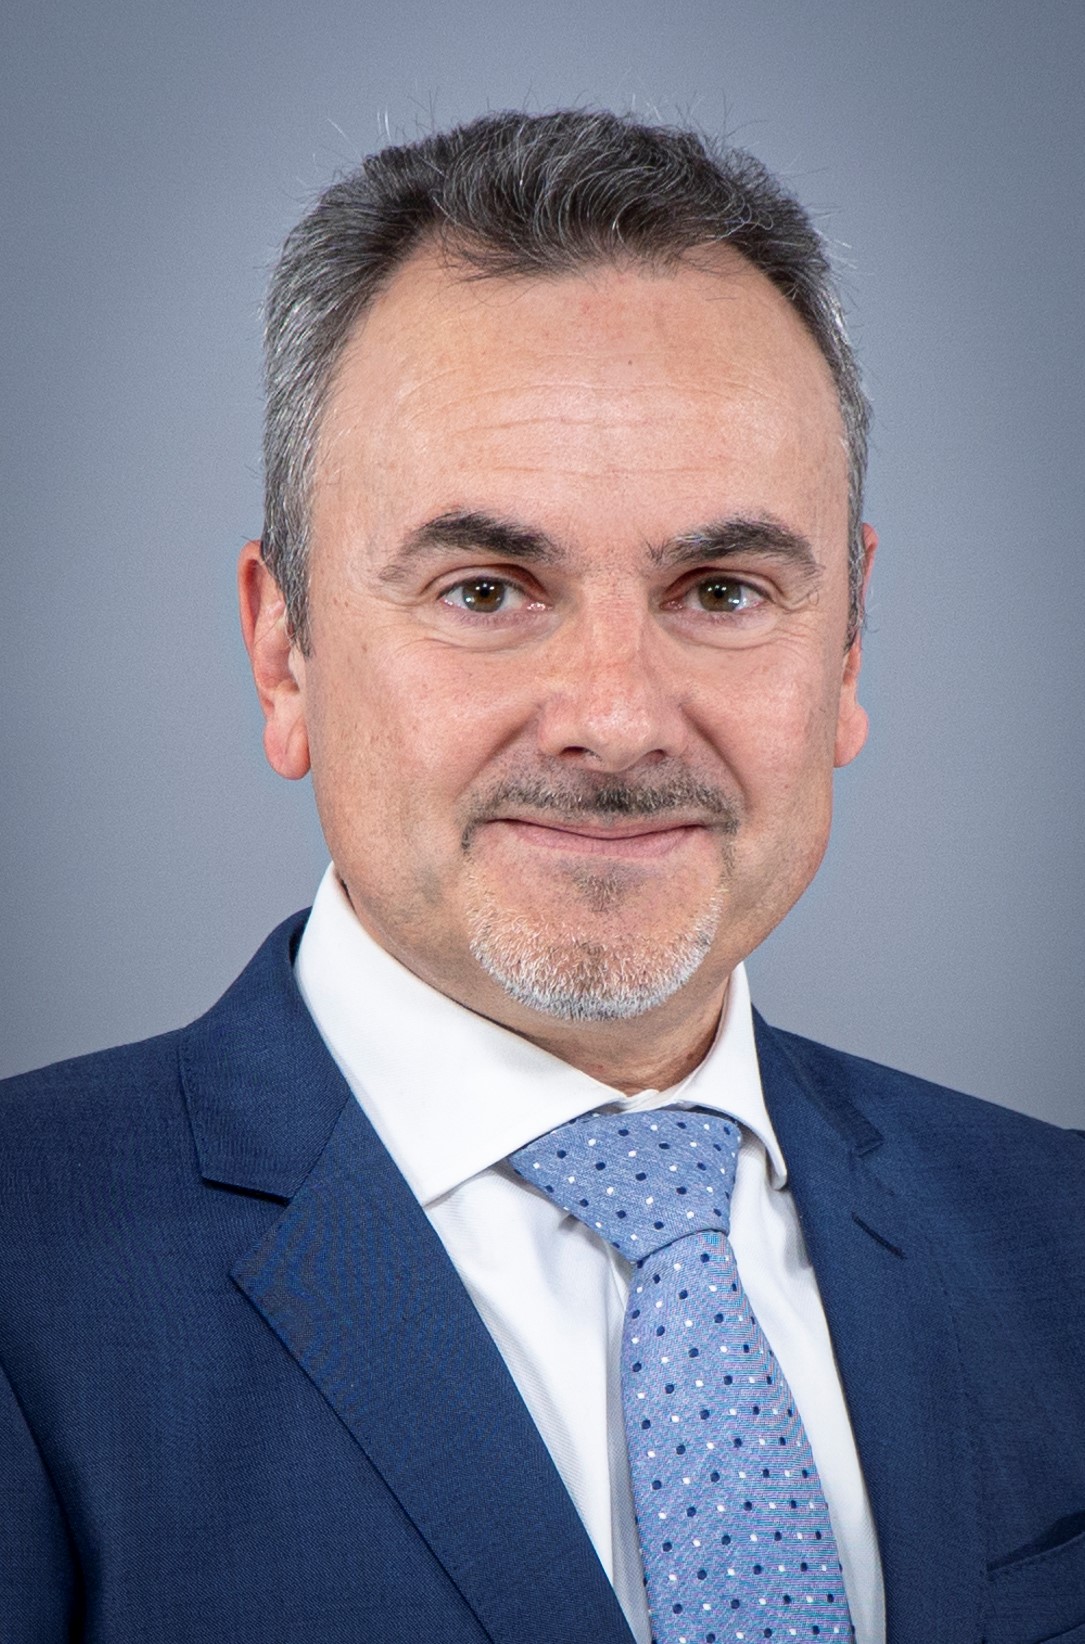 COPA-DATA announces Giuseppe Menin as Industry Manager for Pharmaceutical